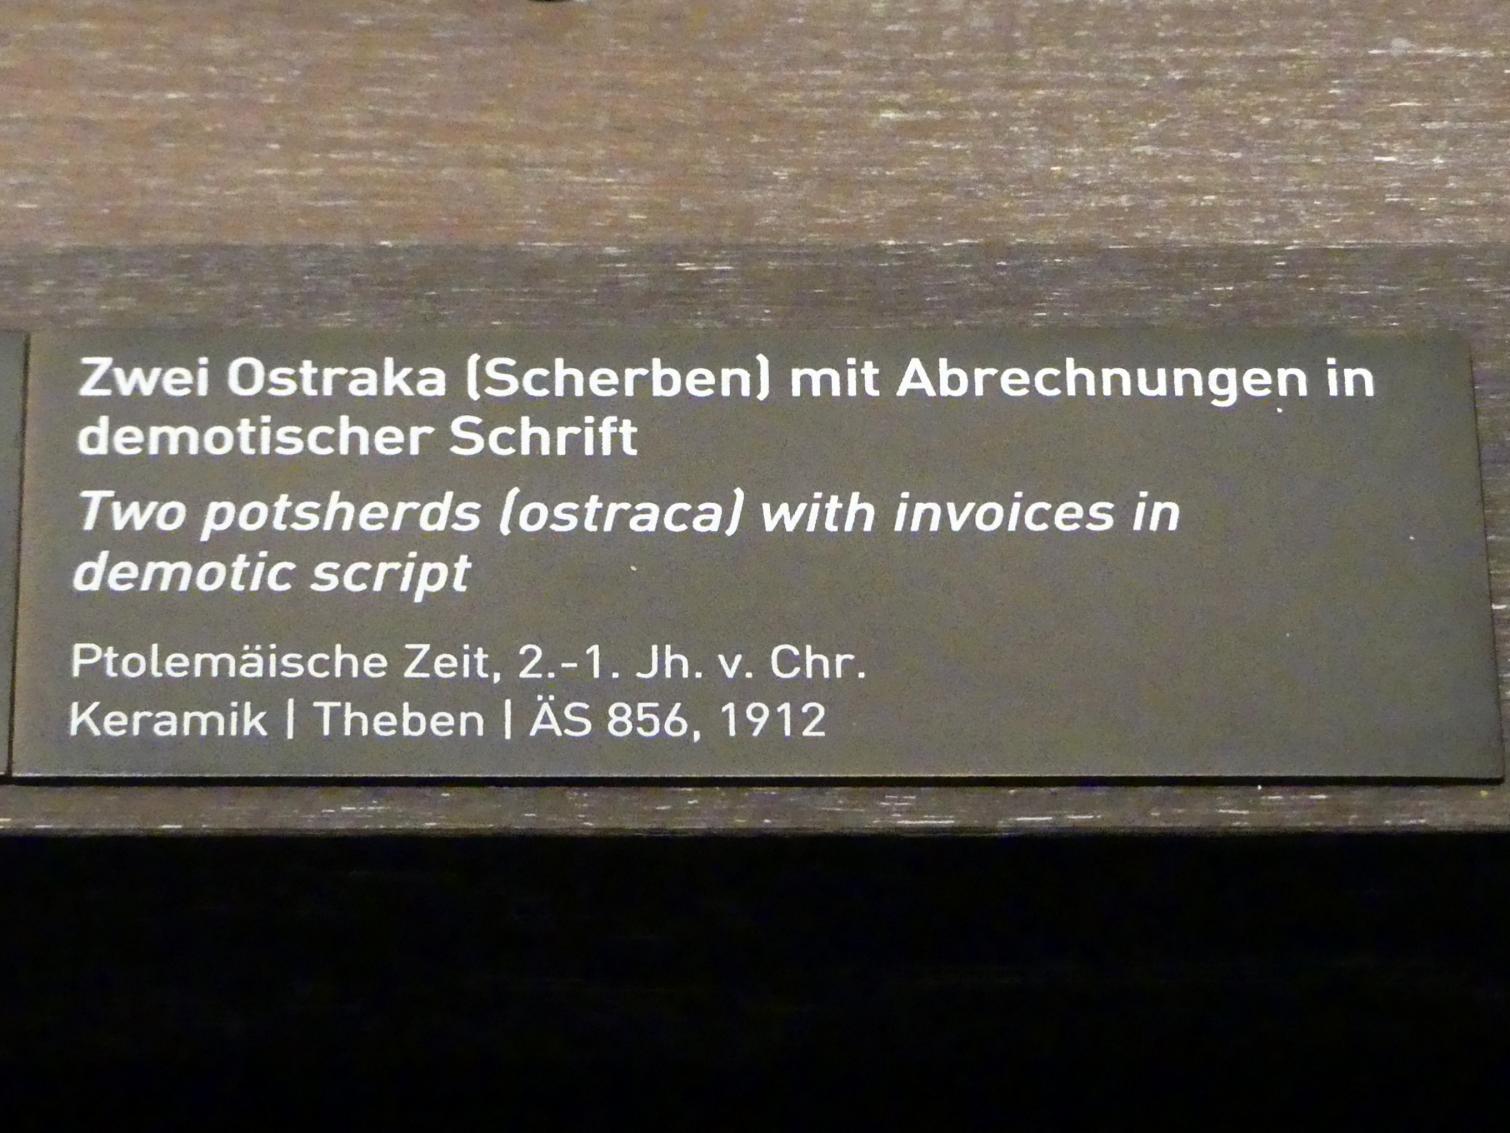 Zwei Ostraka (Scherben) mit Abrechnungen in demotischer Schrift, Ptolemäische Zeit, 400 v. Chr. - 1 n. Chr., 200 - 1 v. Chr., Bild 4/4